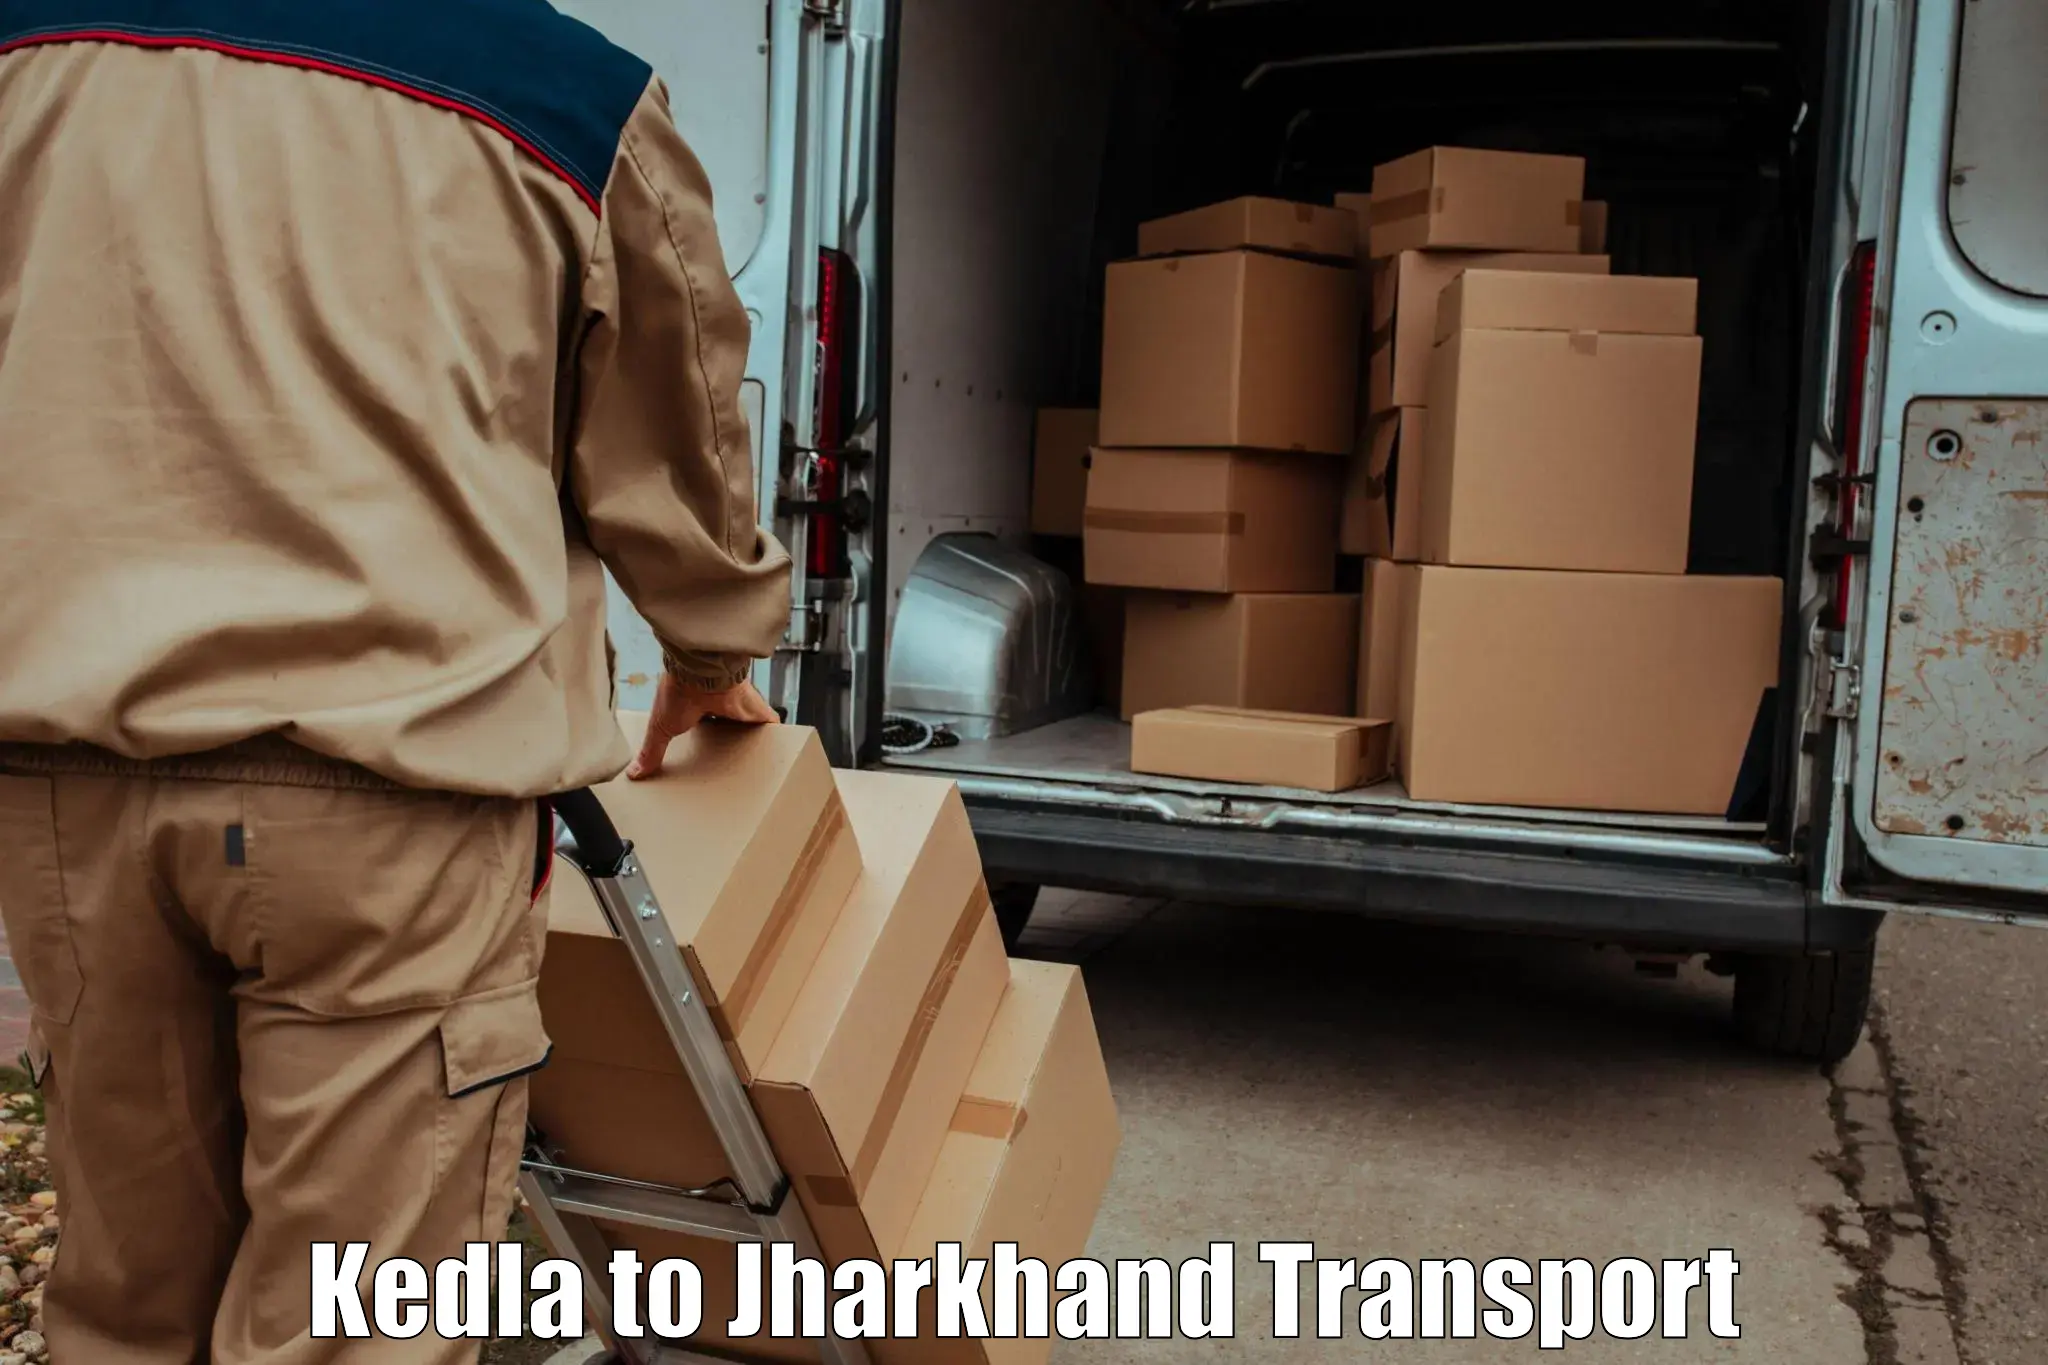 Luggage transport services Kedla to Barwadih